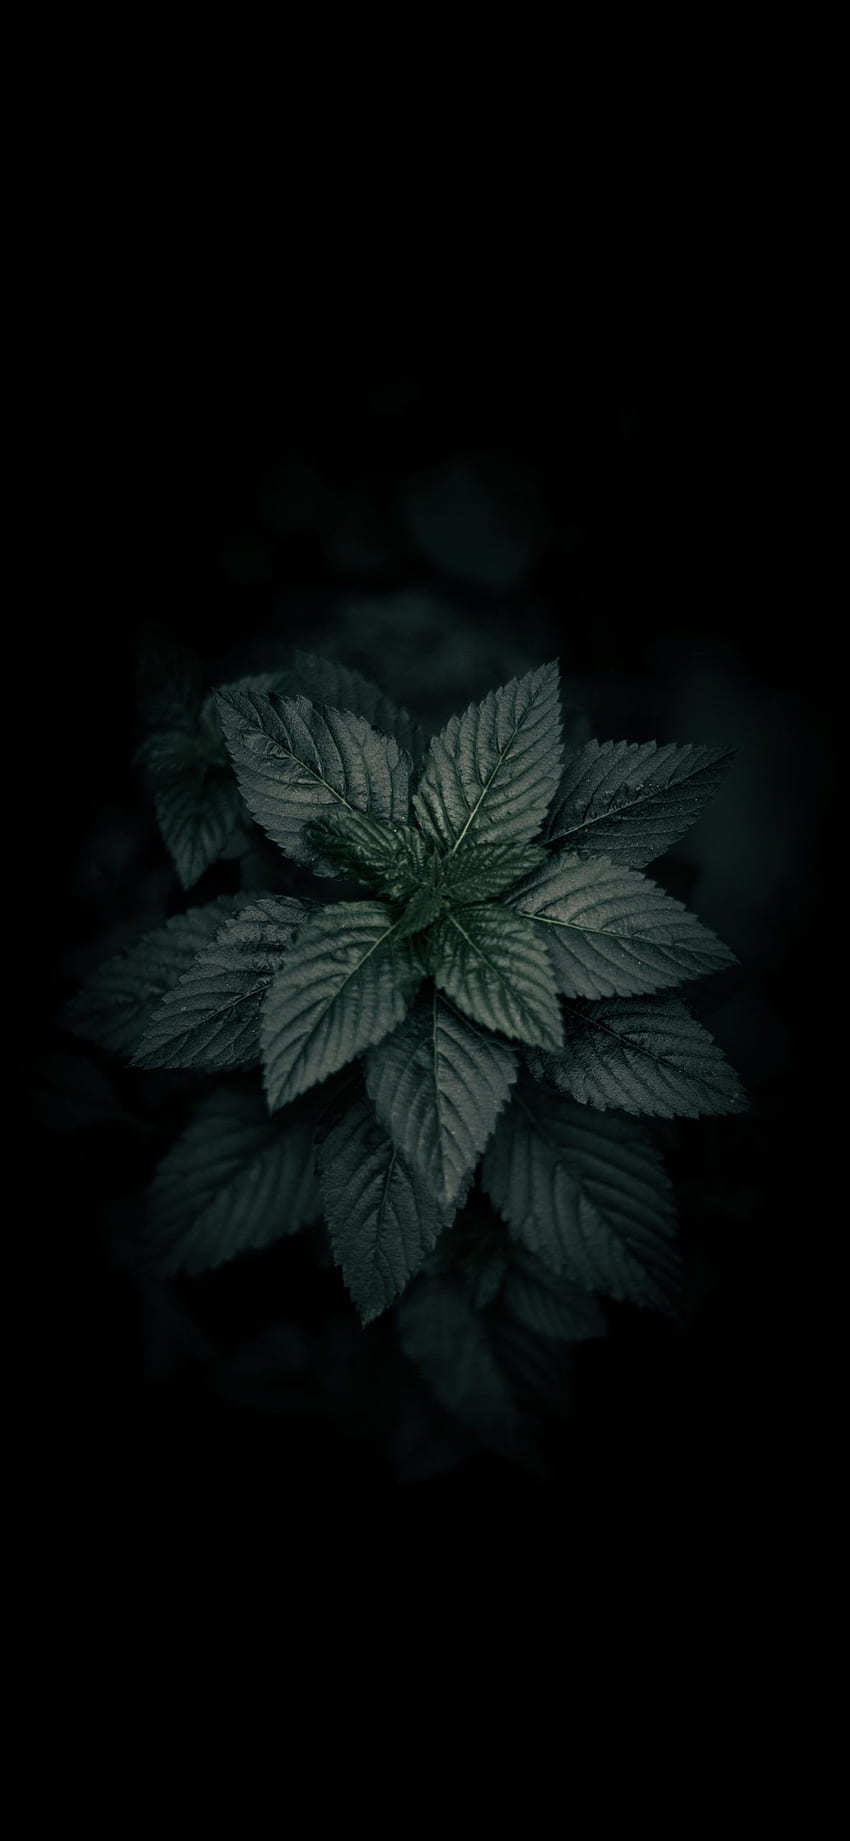 Hojas de plantas de color verde oscuro Amoled, hojas negras fondo de pantalla del teléfono